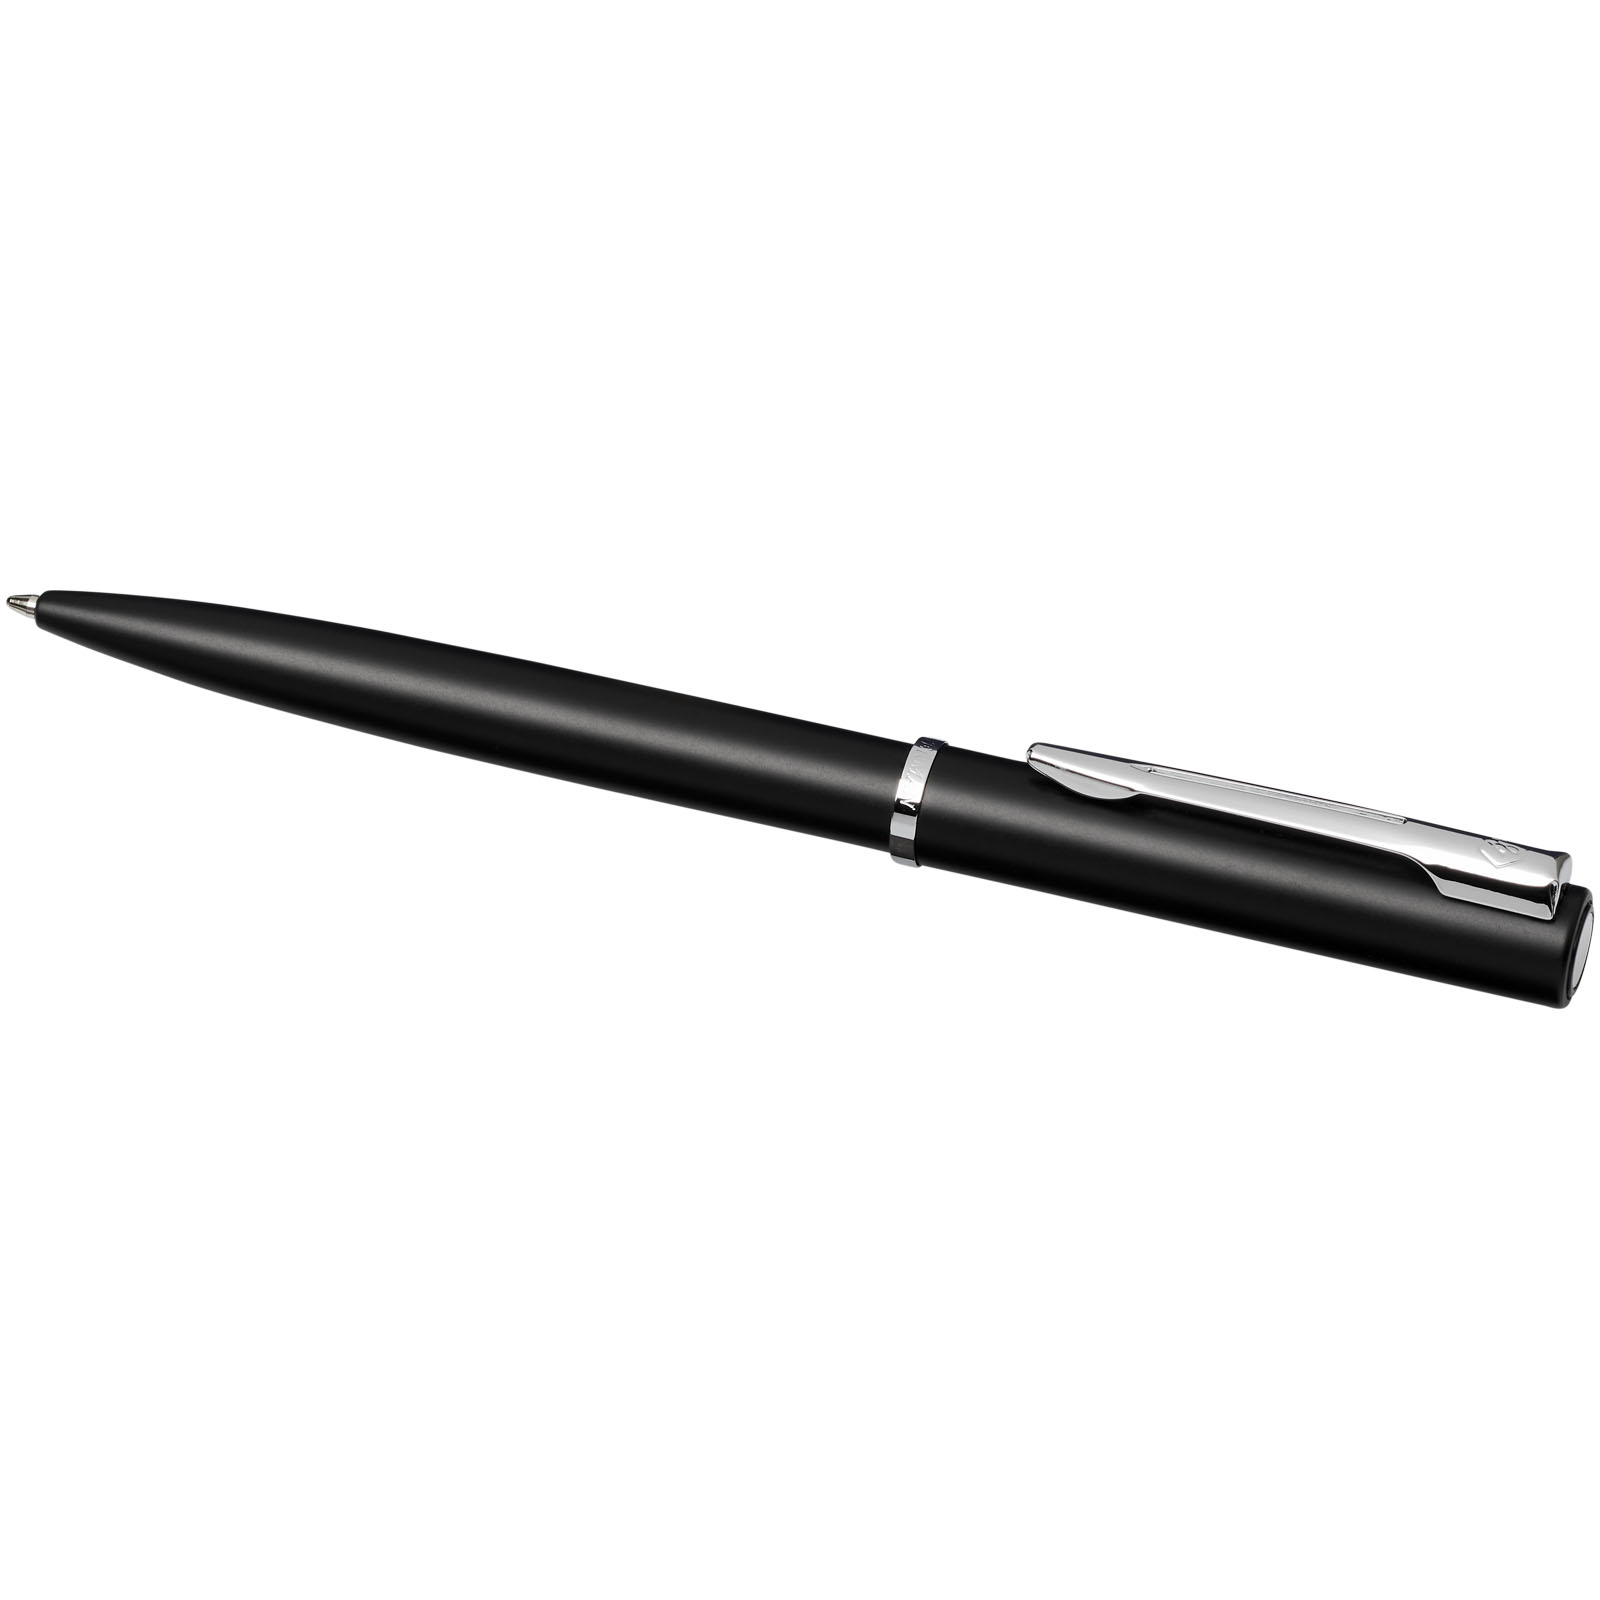 Advertising Ballpoint Pens - Waterman Allure ballpoint pen - 4